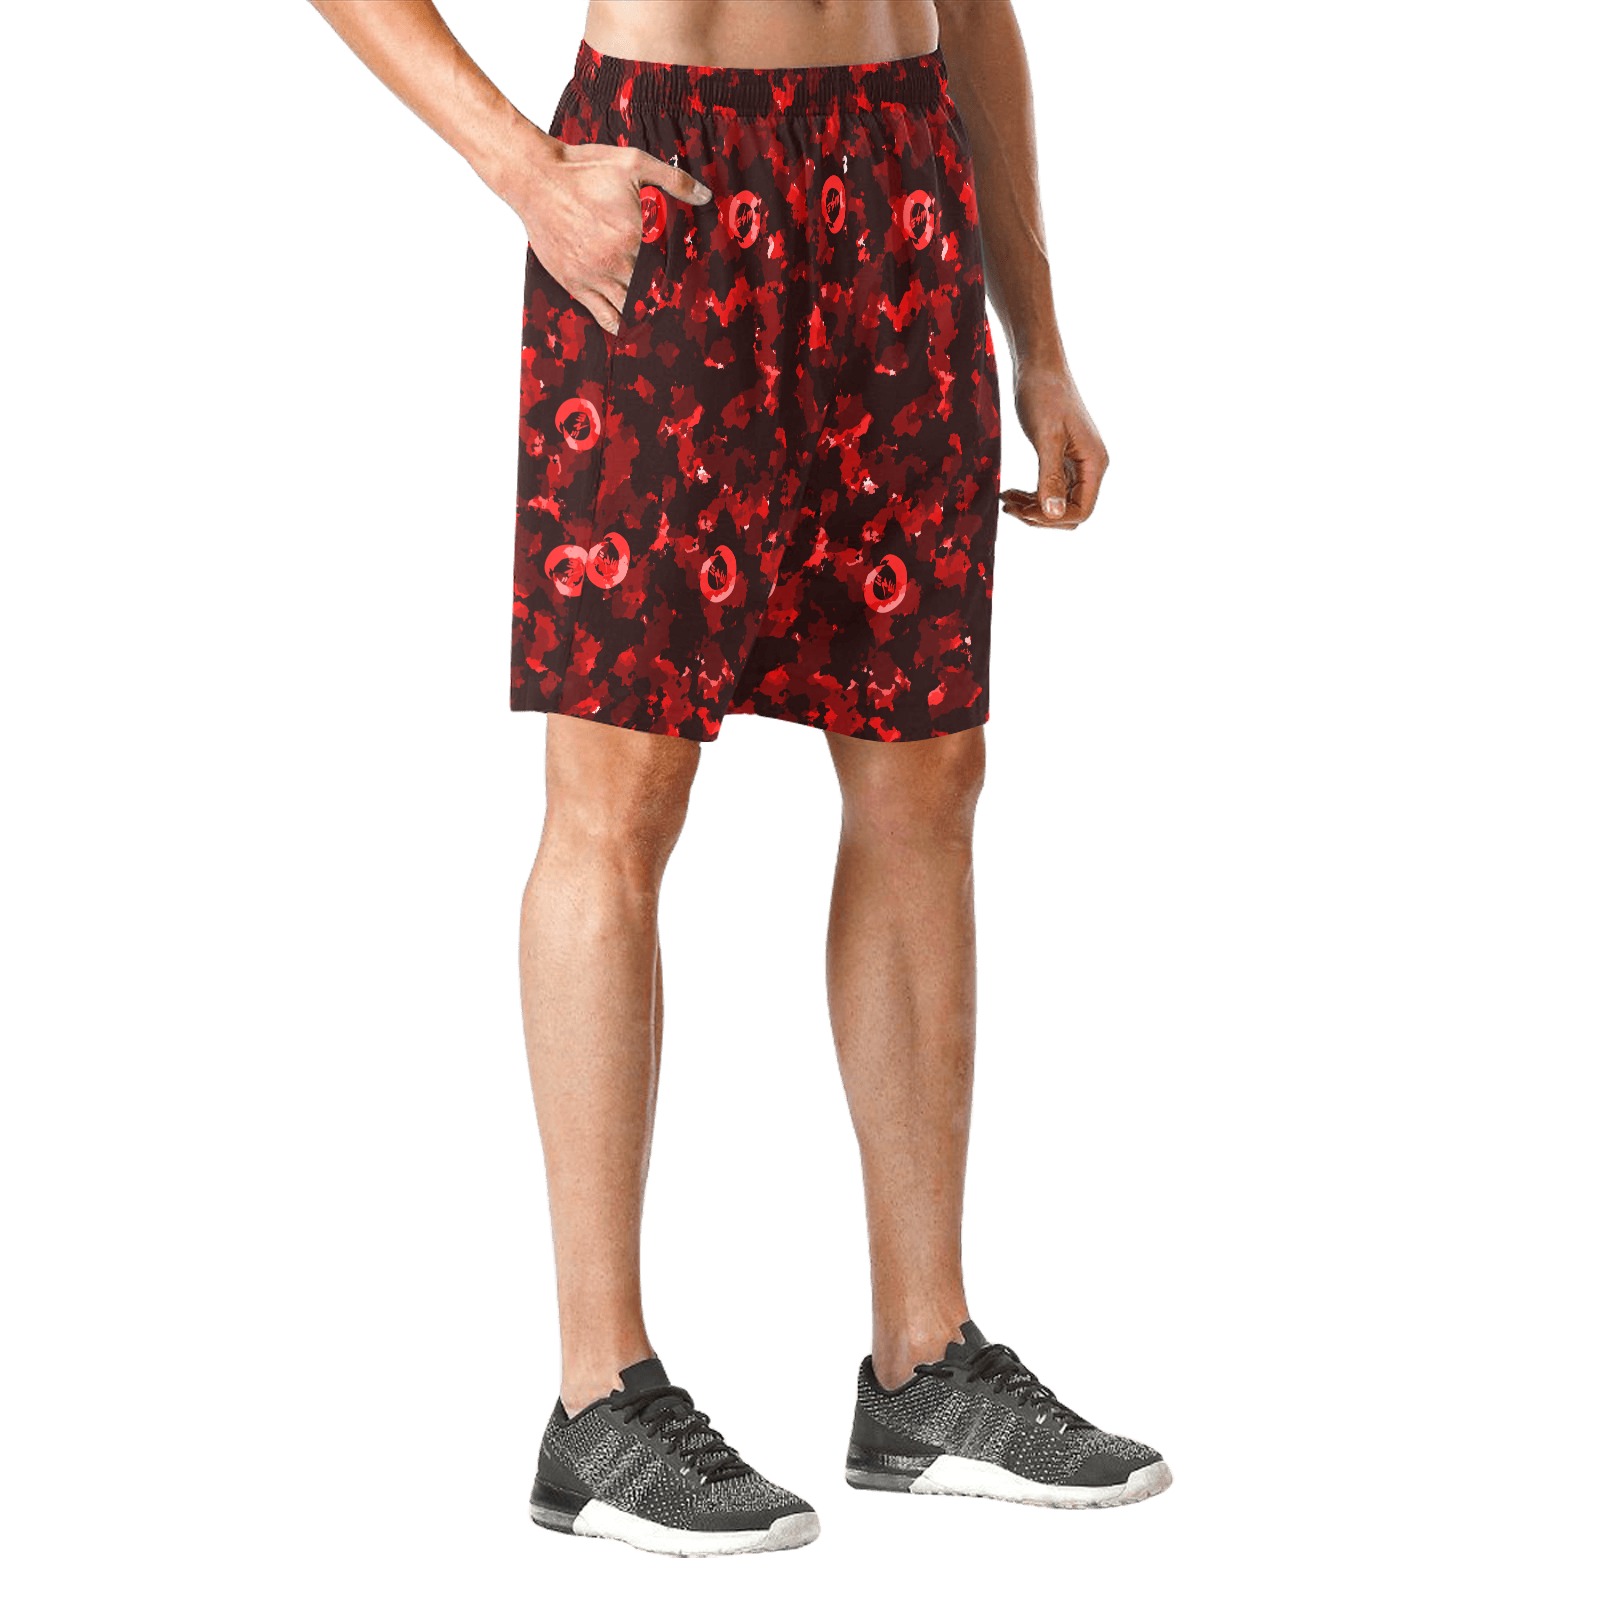 New Project (2) (2) Men's All Over Print Elastic Beach Shorts (Model L20)